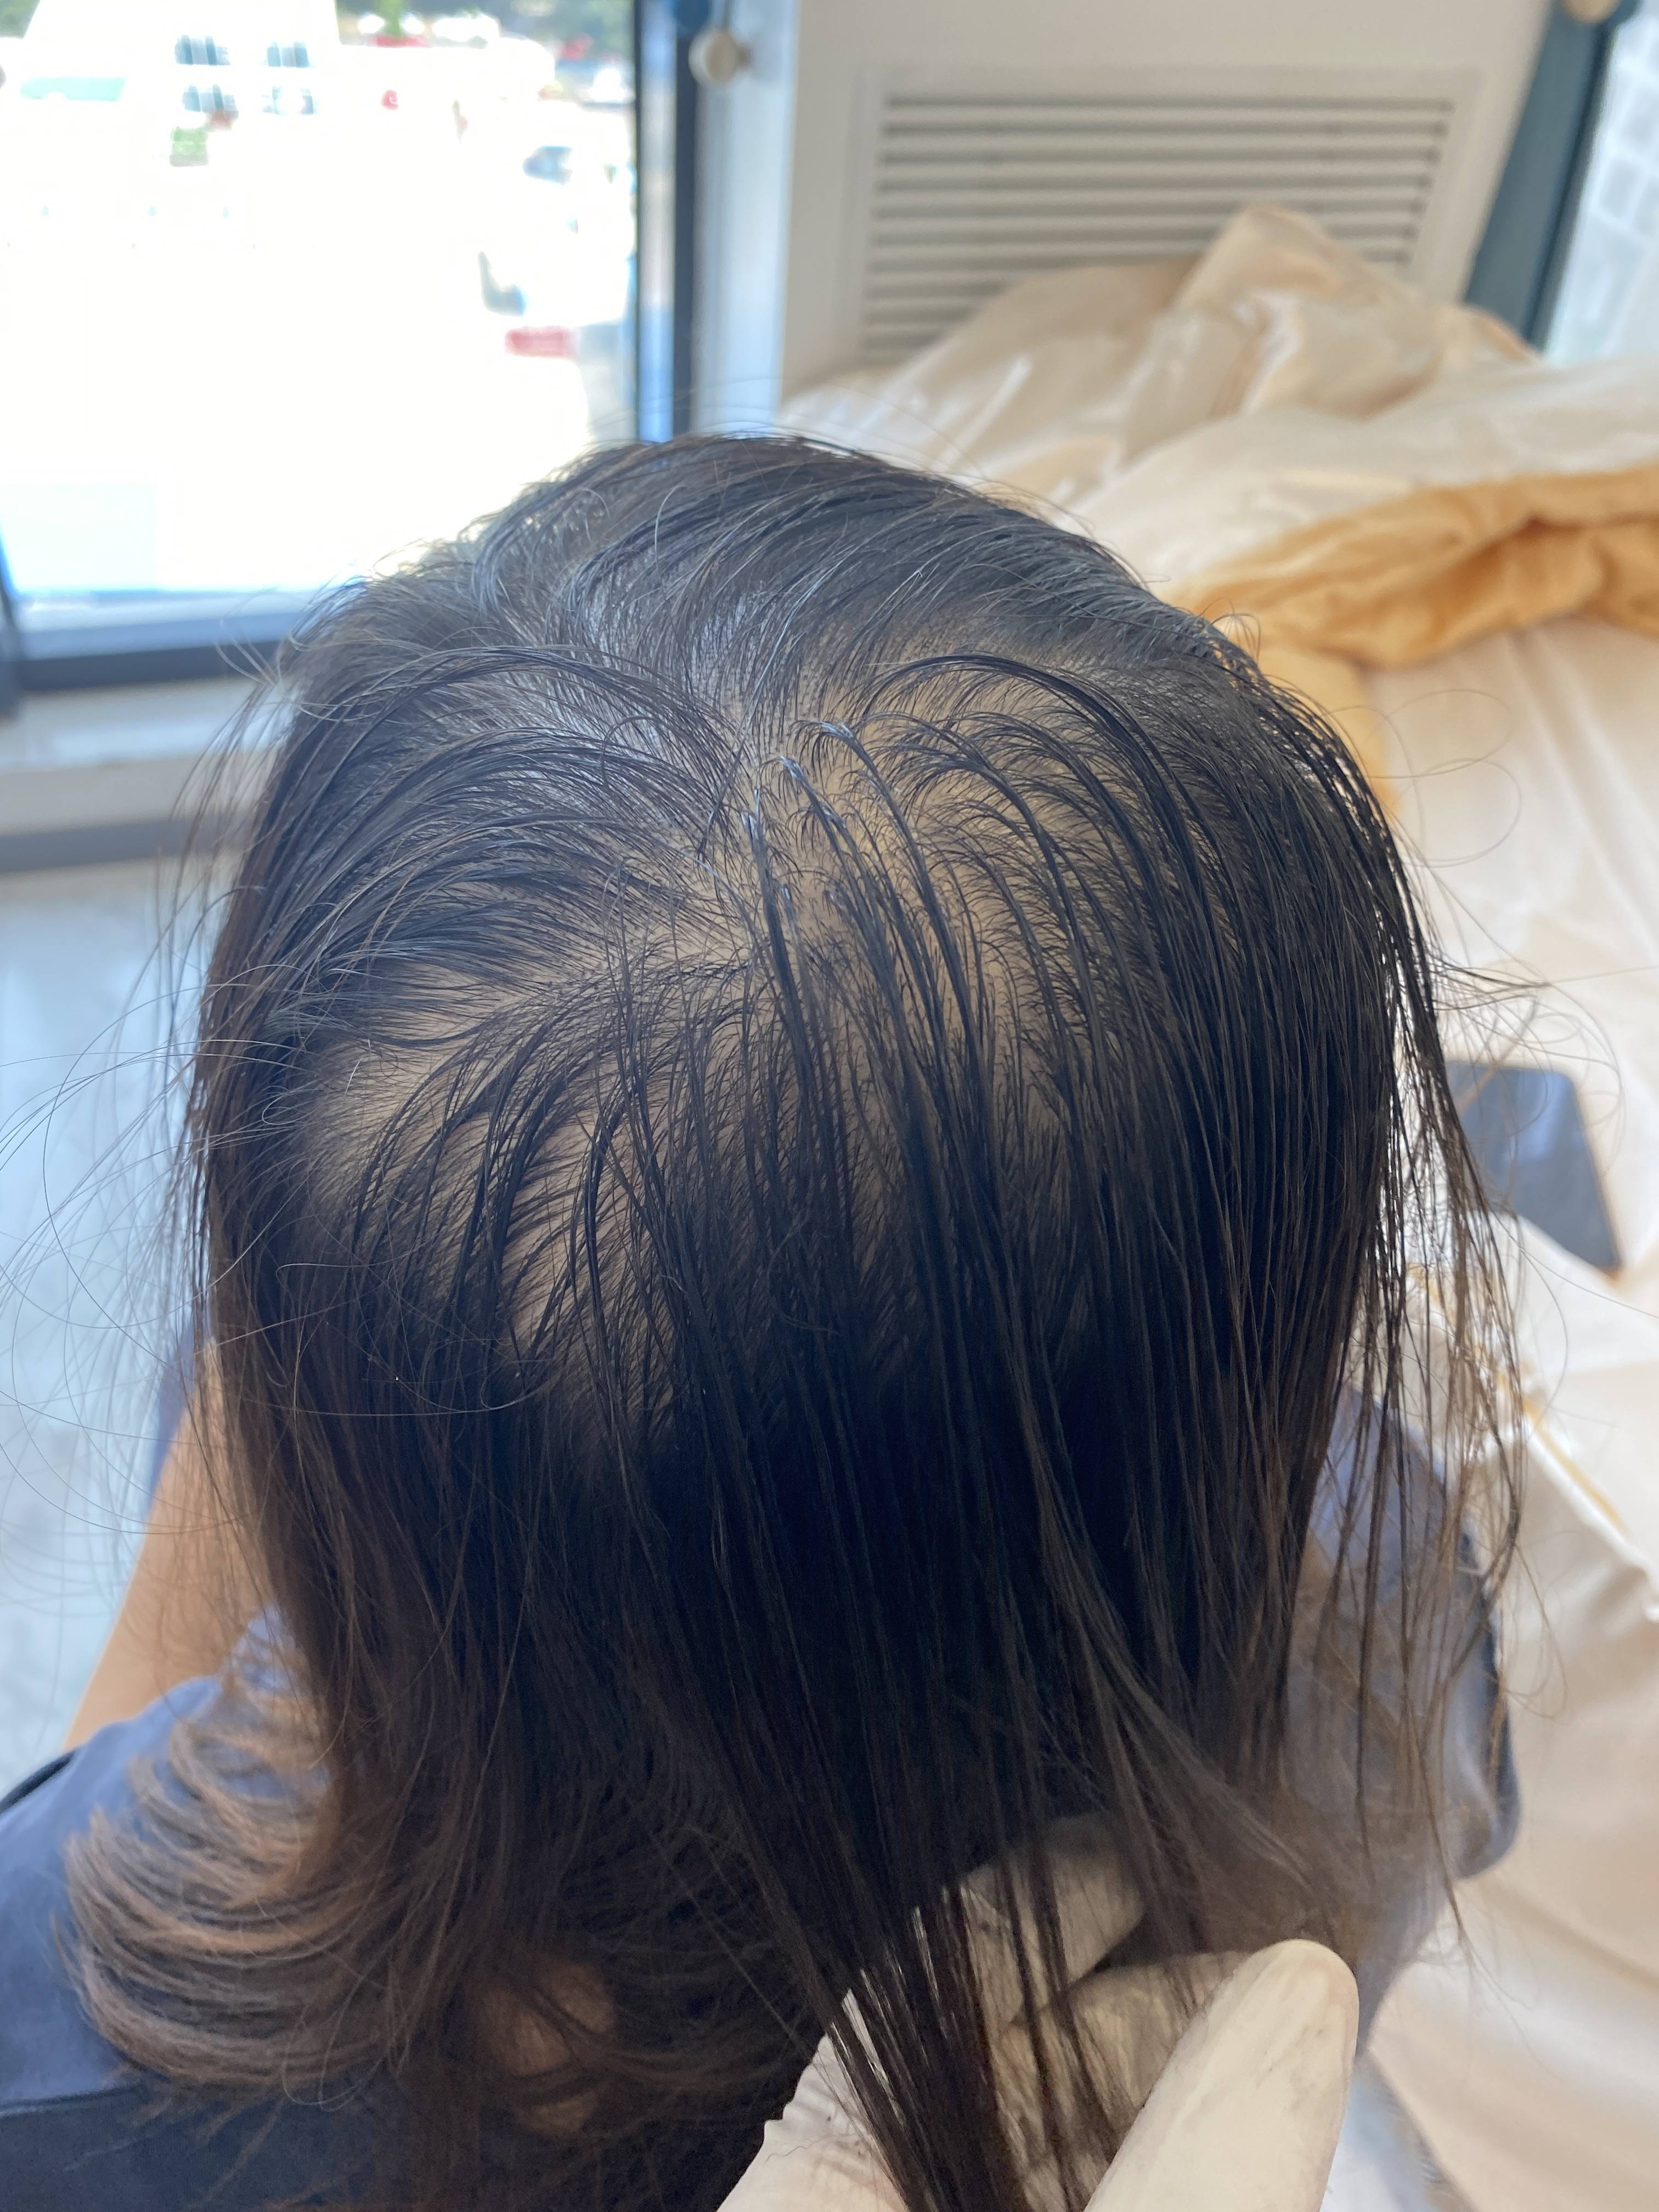 1/ 12 头顶头发稀疏,这种情况可以采用纹发里的加密方案来做掩饰,在